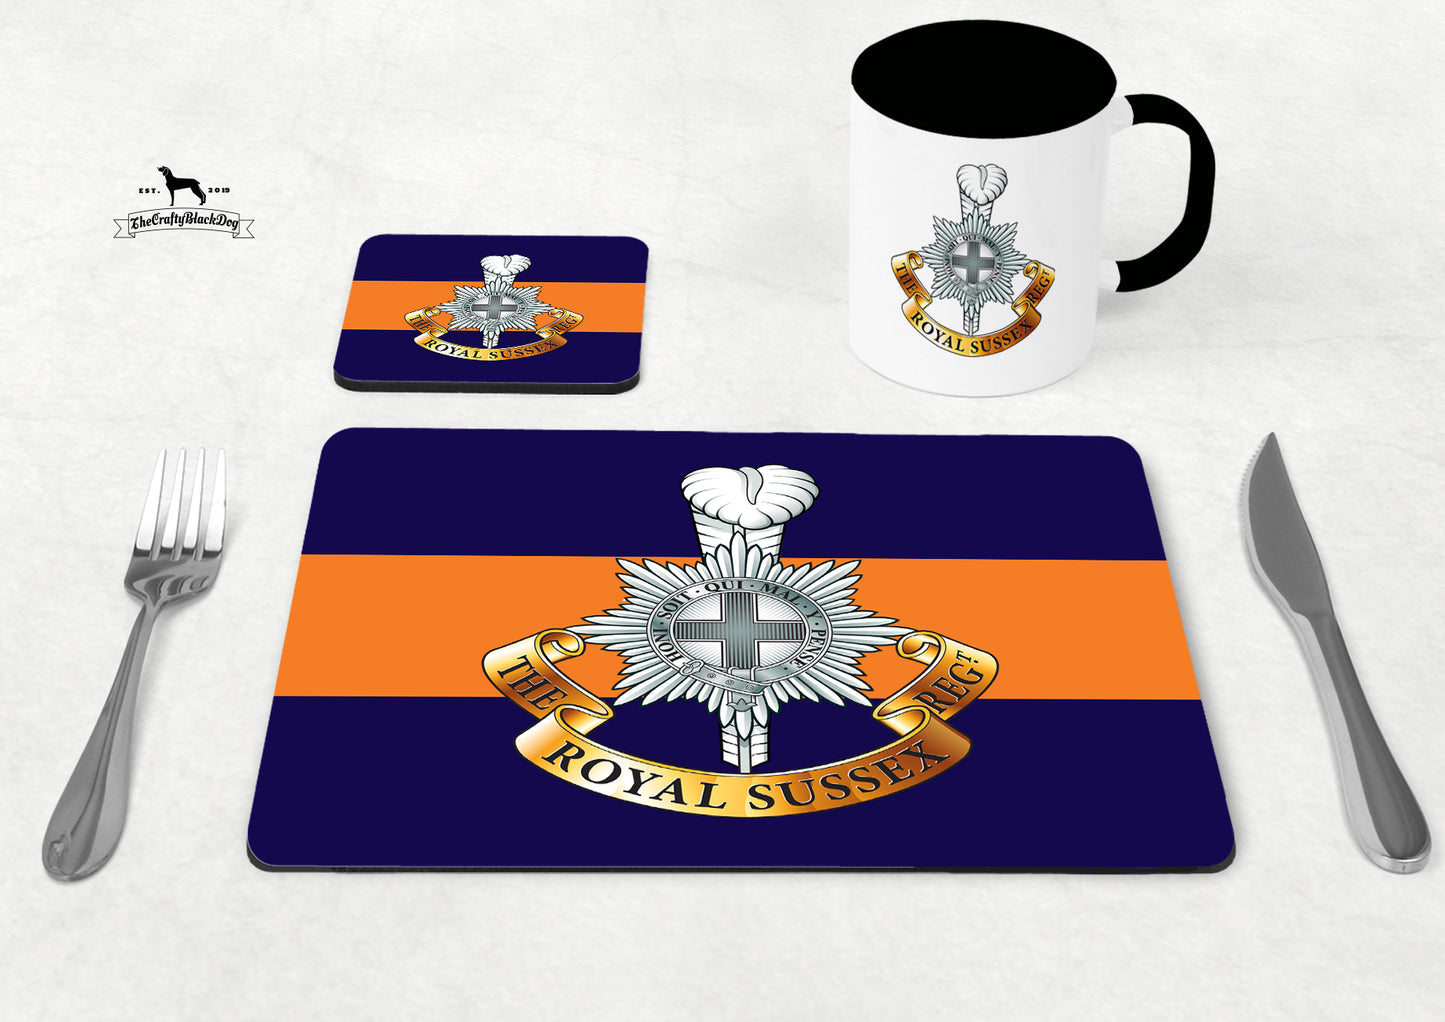 Royal Sussex Regiment - Table Set